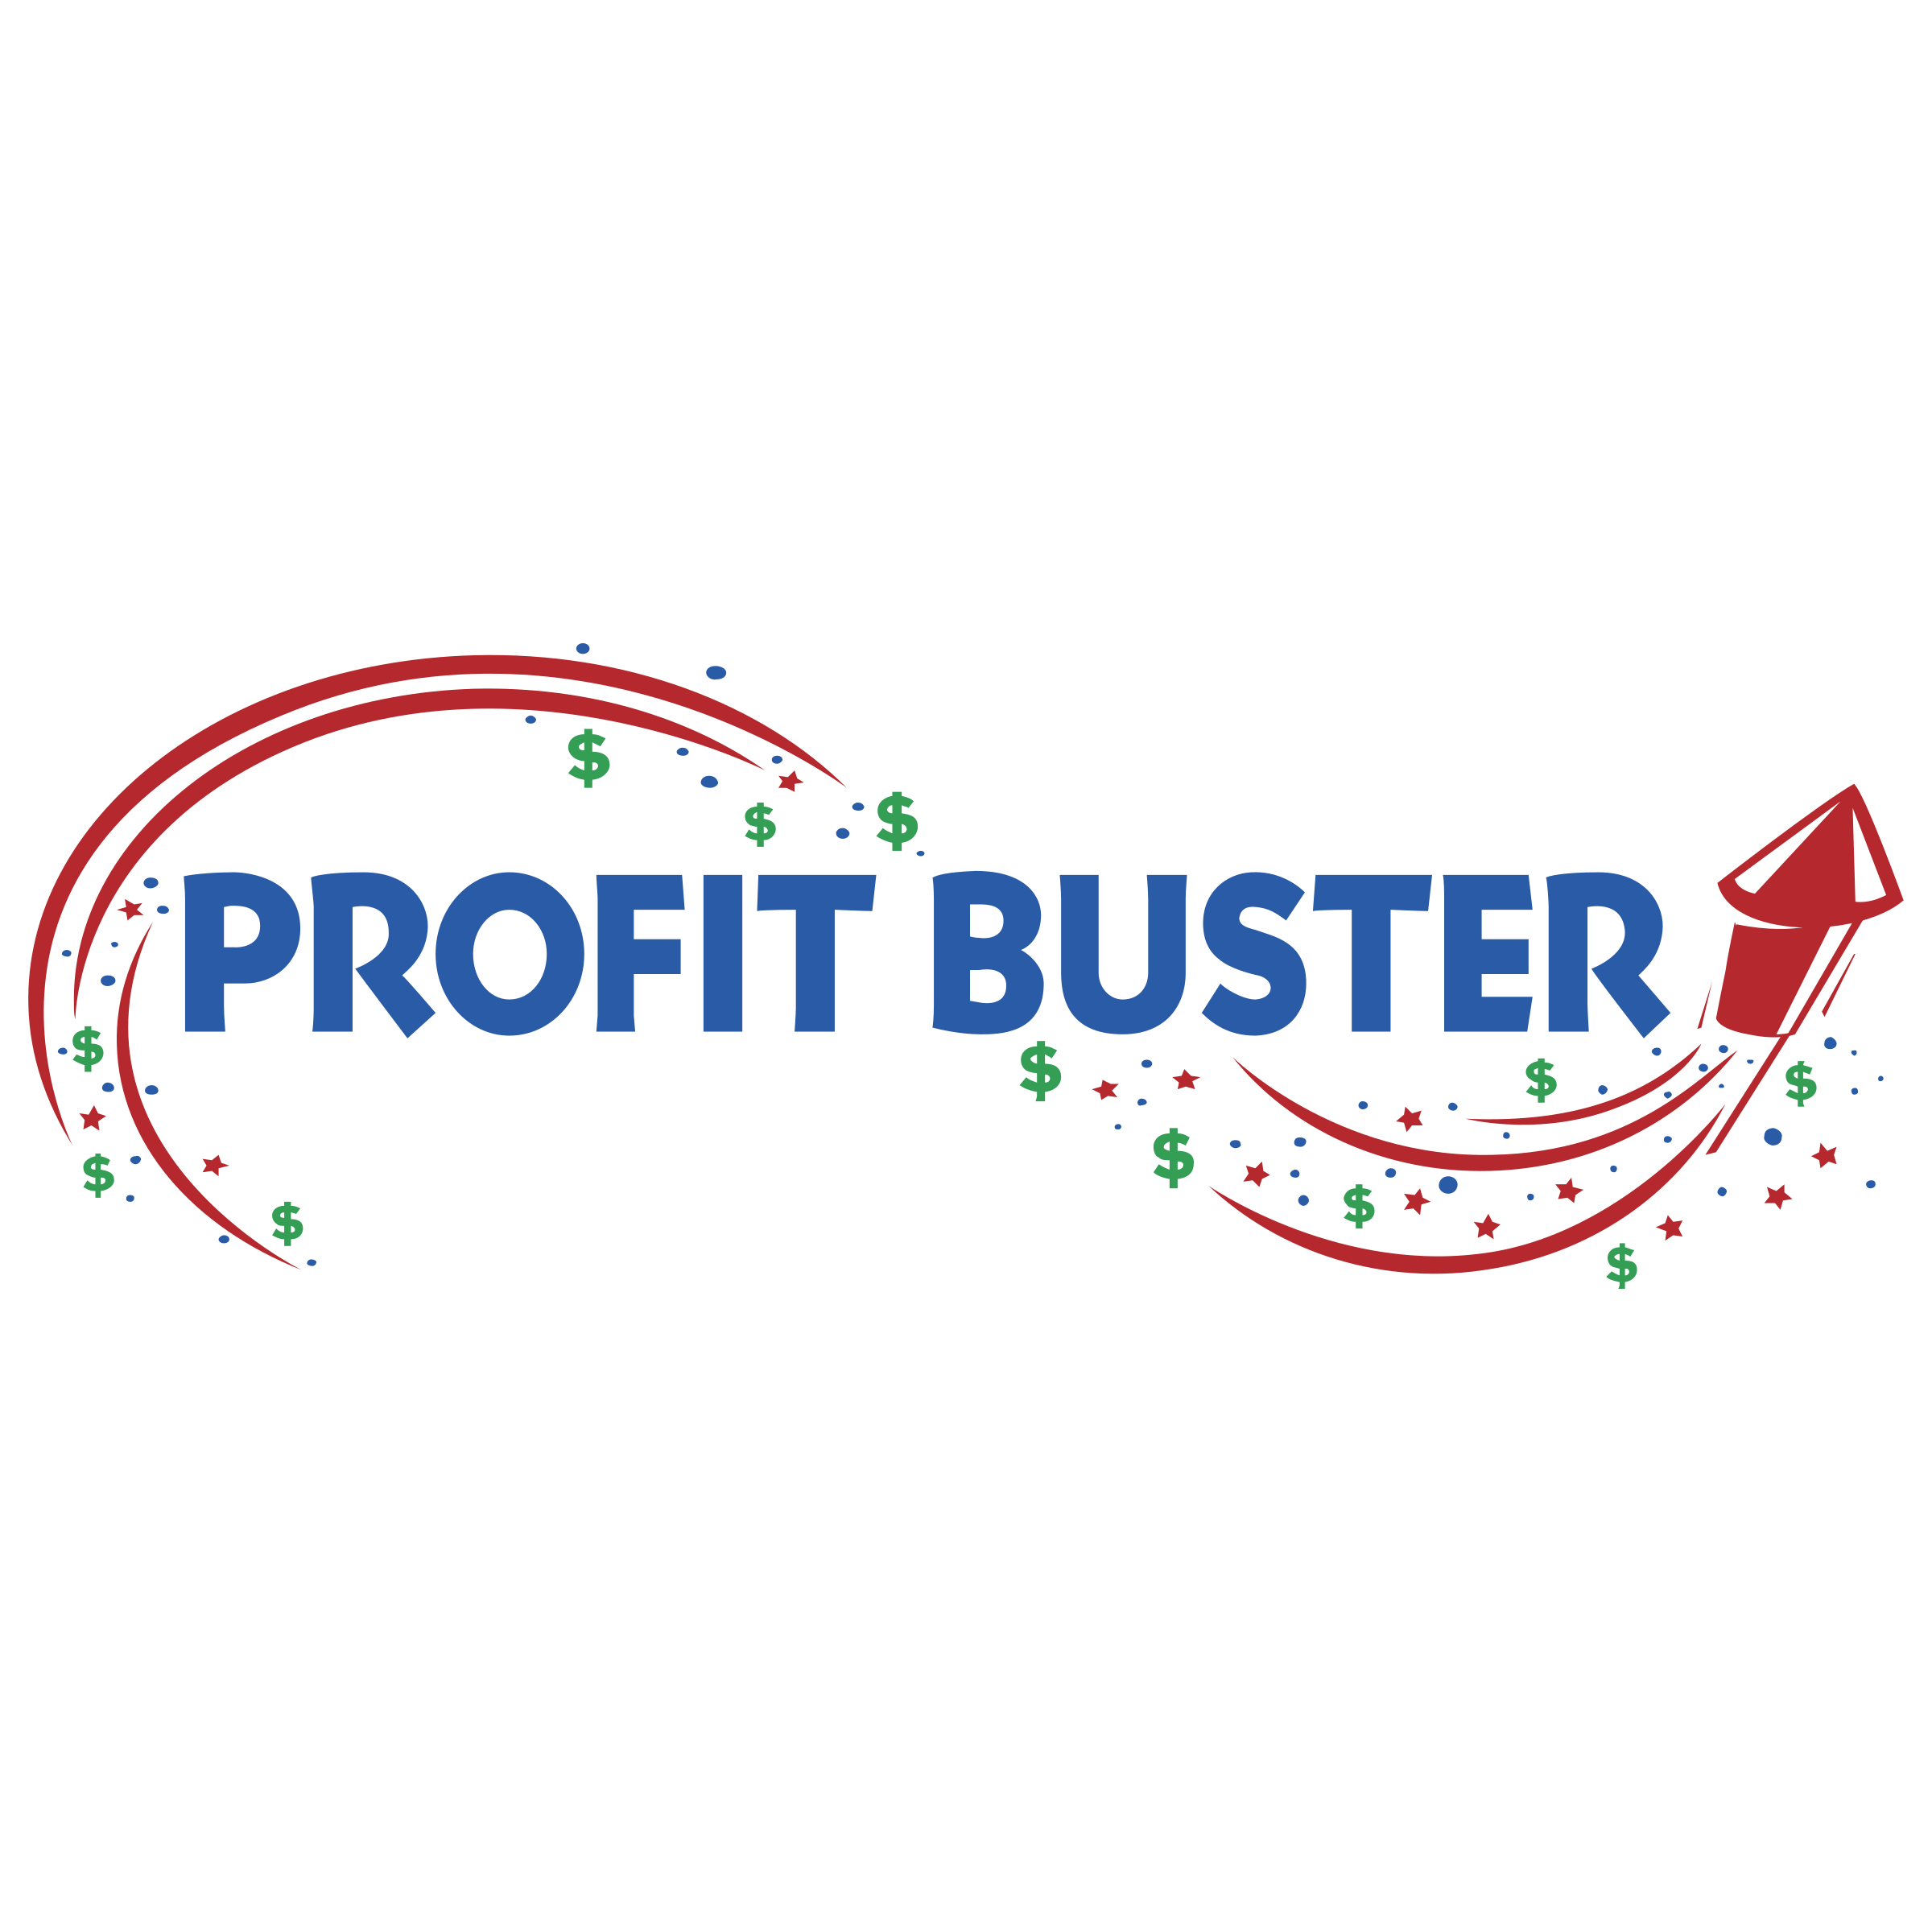 Buster Logo - Profit Buster Logo PNG Transparent & SVG Vector - Freebie Supply